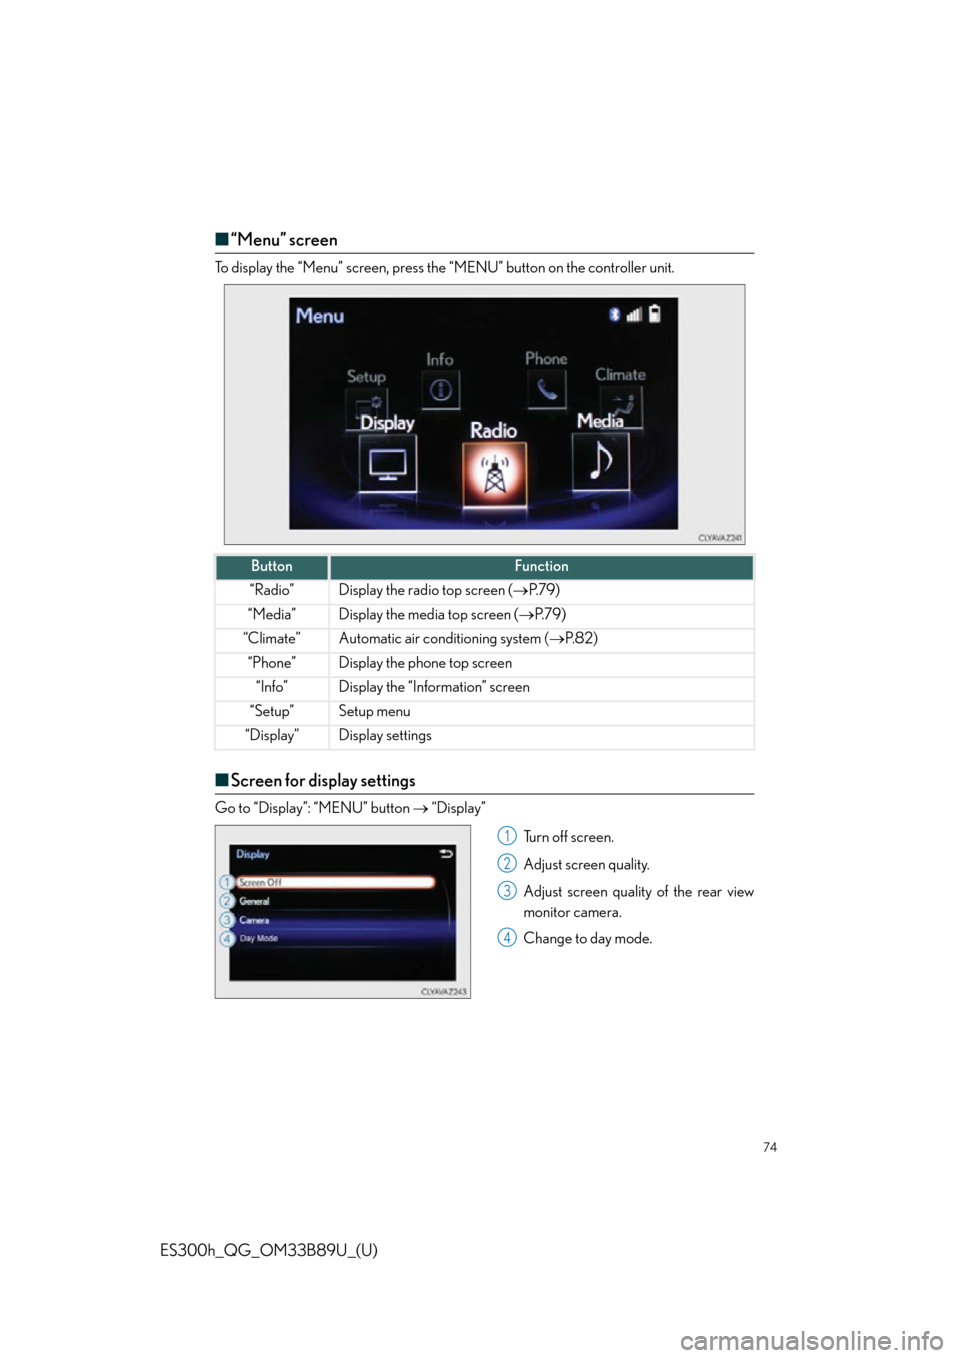 Lexus ES300h 2016  Owners Manual Quick Guide (OM33B89U) 74
ES300h_QG_OM33B89U_(U)
■“Menu” screen
To display the “Menu” screen, press the “MENU” button on the controller unit.
■Screen for display settings
Go to “Display”: “MENU” butt